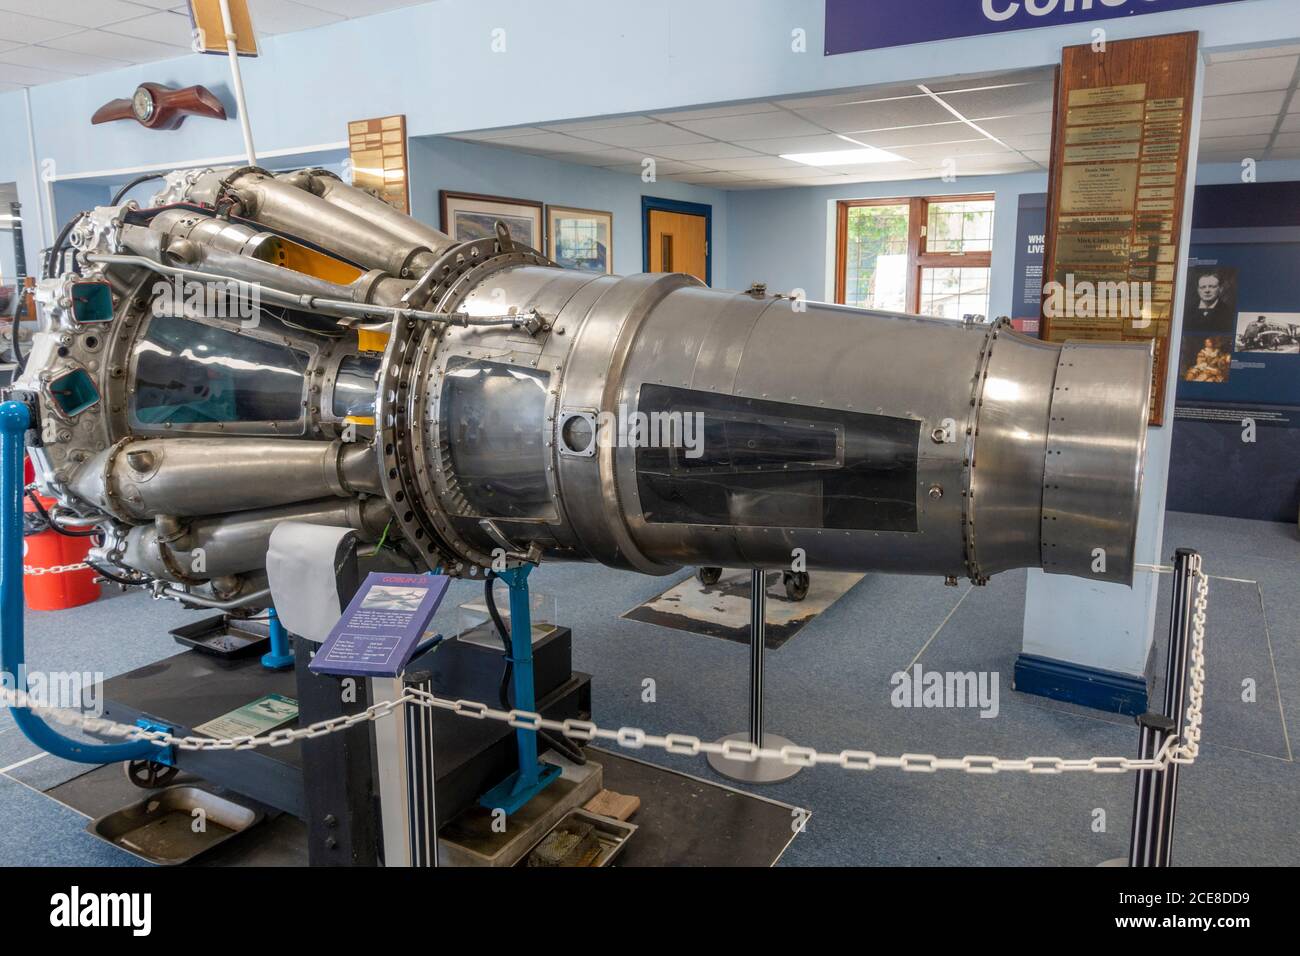 Un moteur à jet centrifuge mono-étagé Goblin 35 exposé au musée de Havilland, Londres Colney, Royaume-Uni Banque D'Images